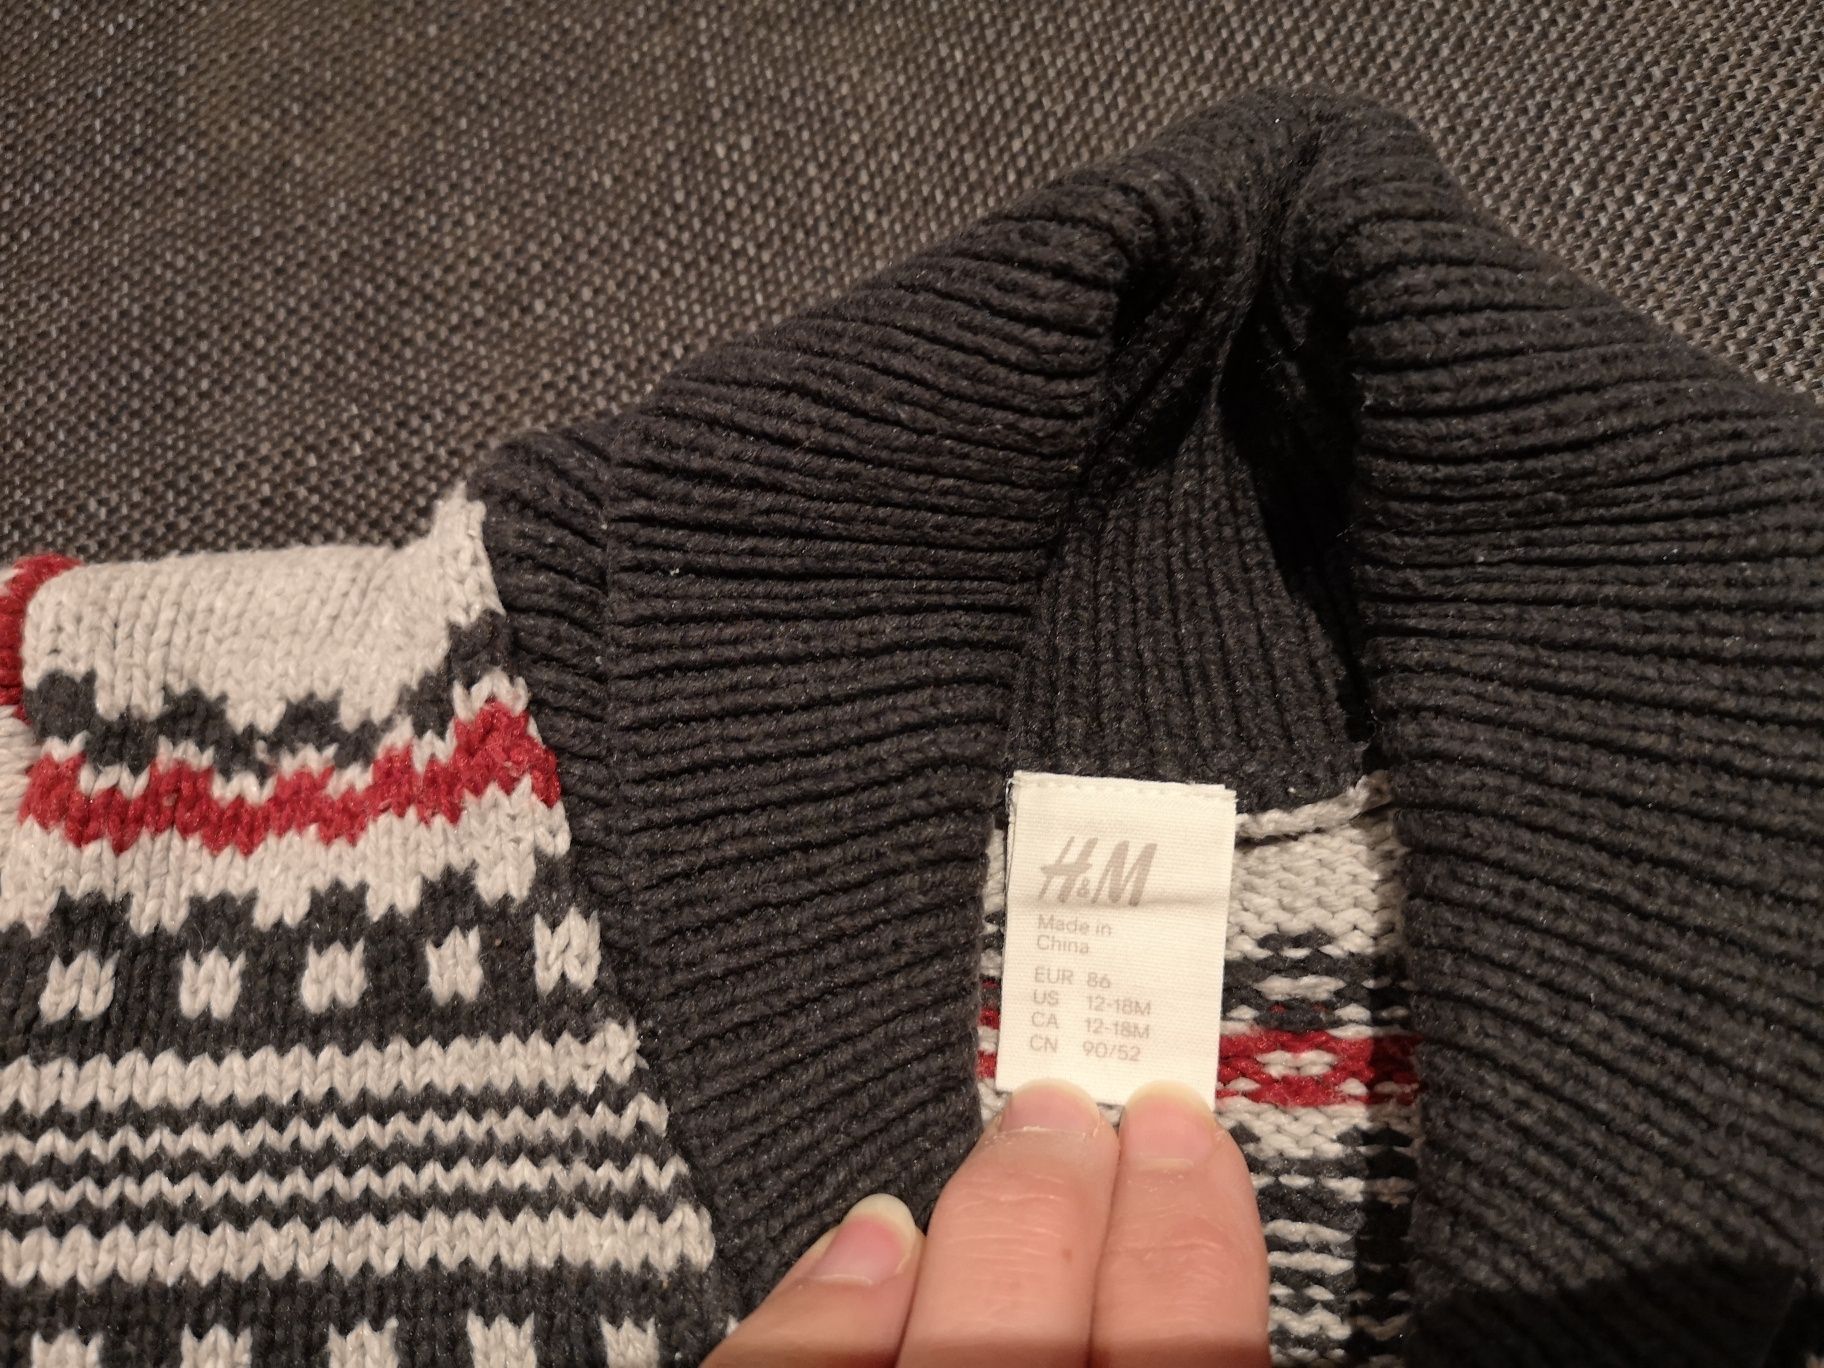 Ciepły, rozpinany sweter H&M rozmiar 86